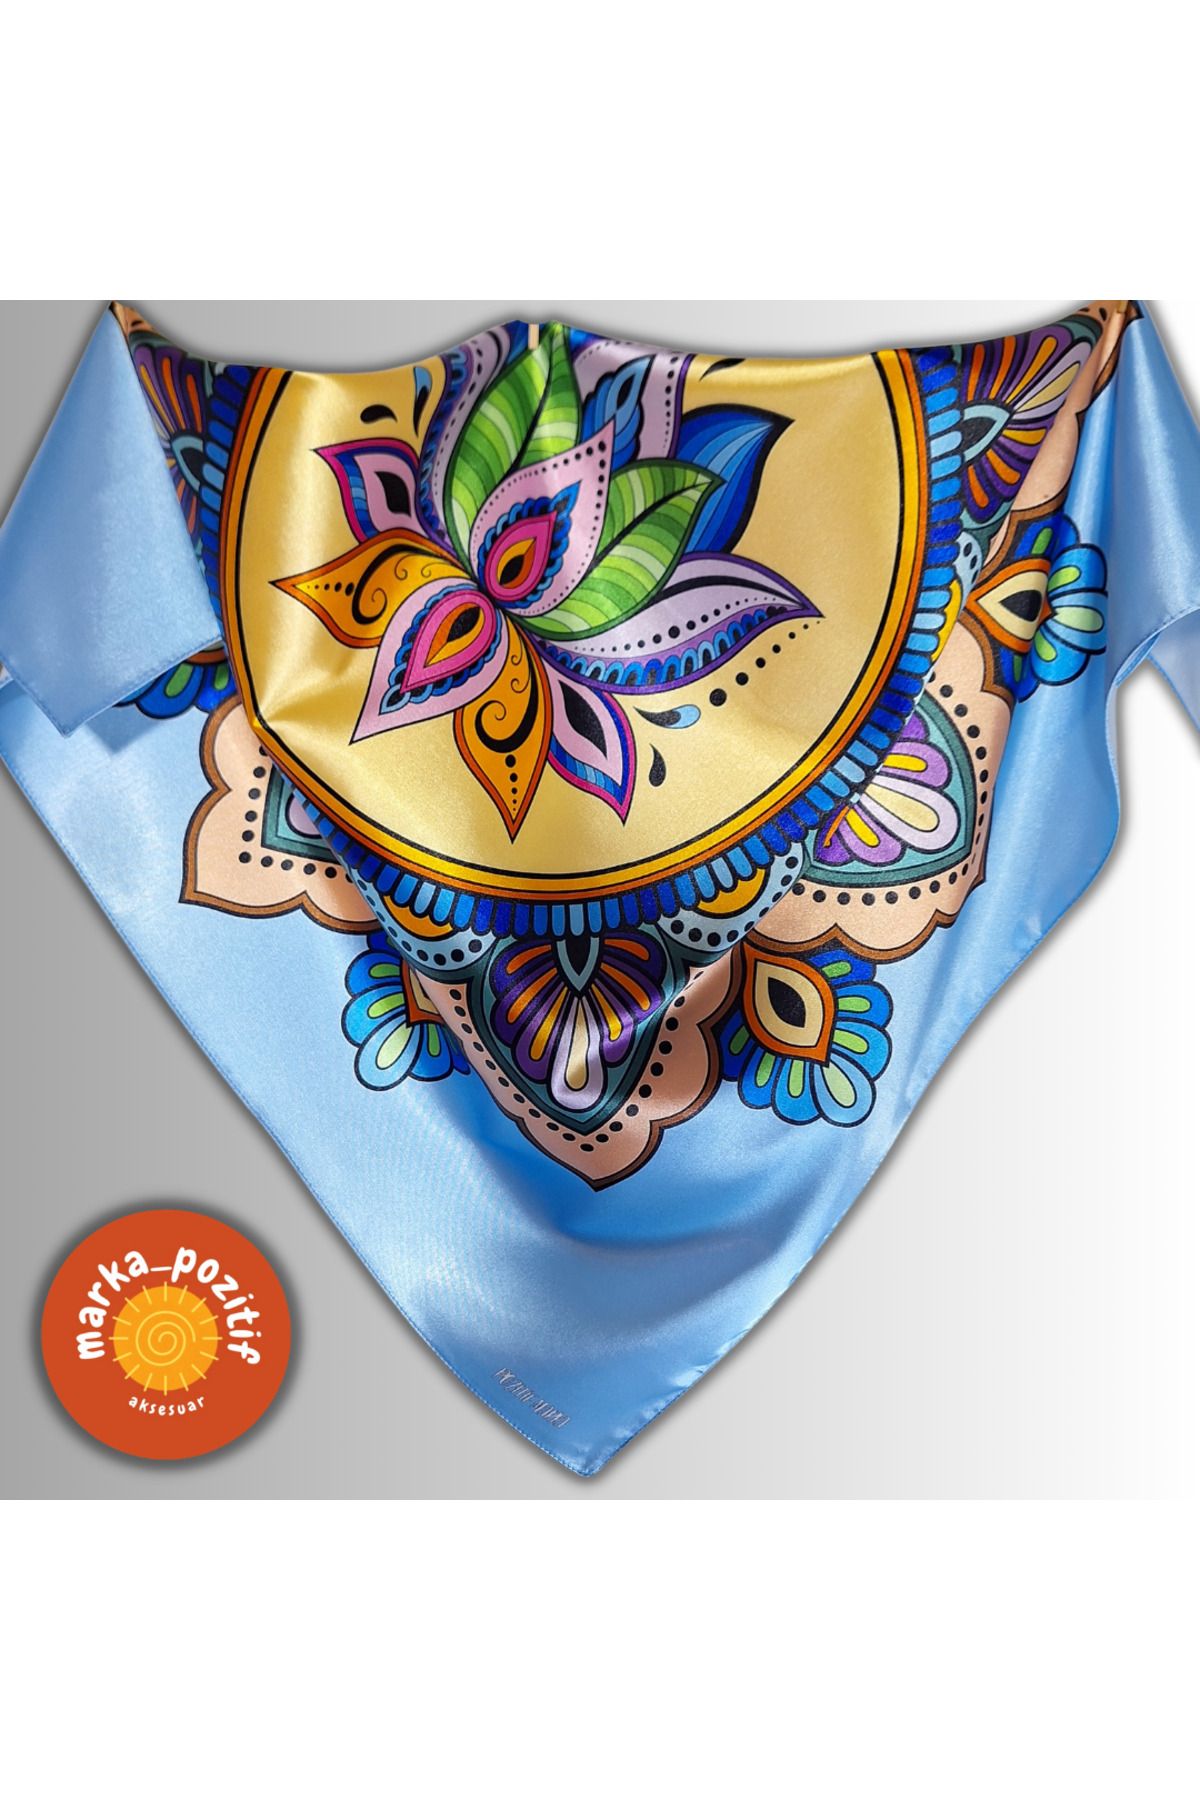 POZİTİF MRK Meditasyon Koleksiyonu Mandala Lotus Çiçeği Etnik Çakra Mavi Bandana Fular